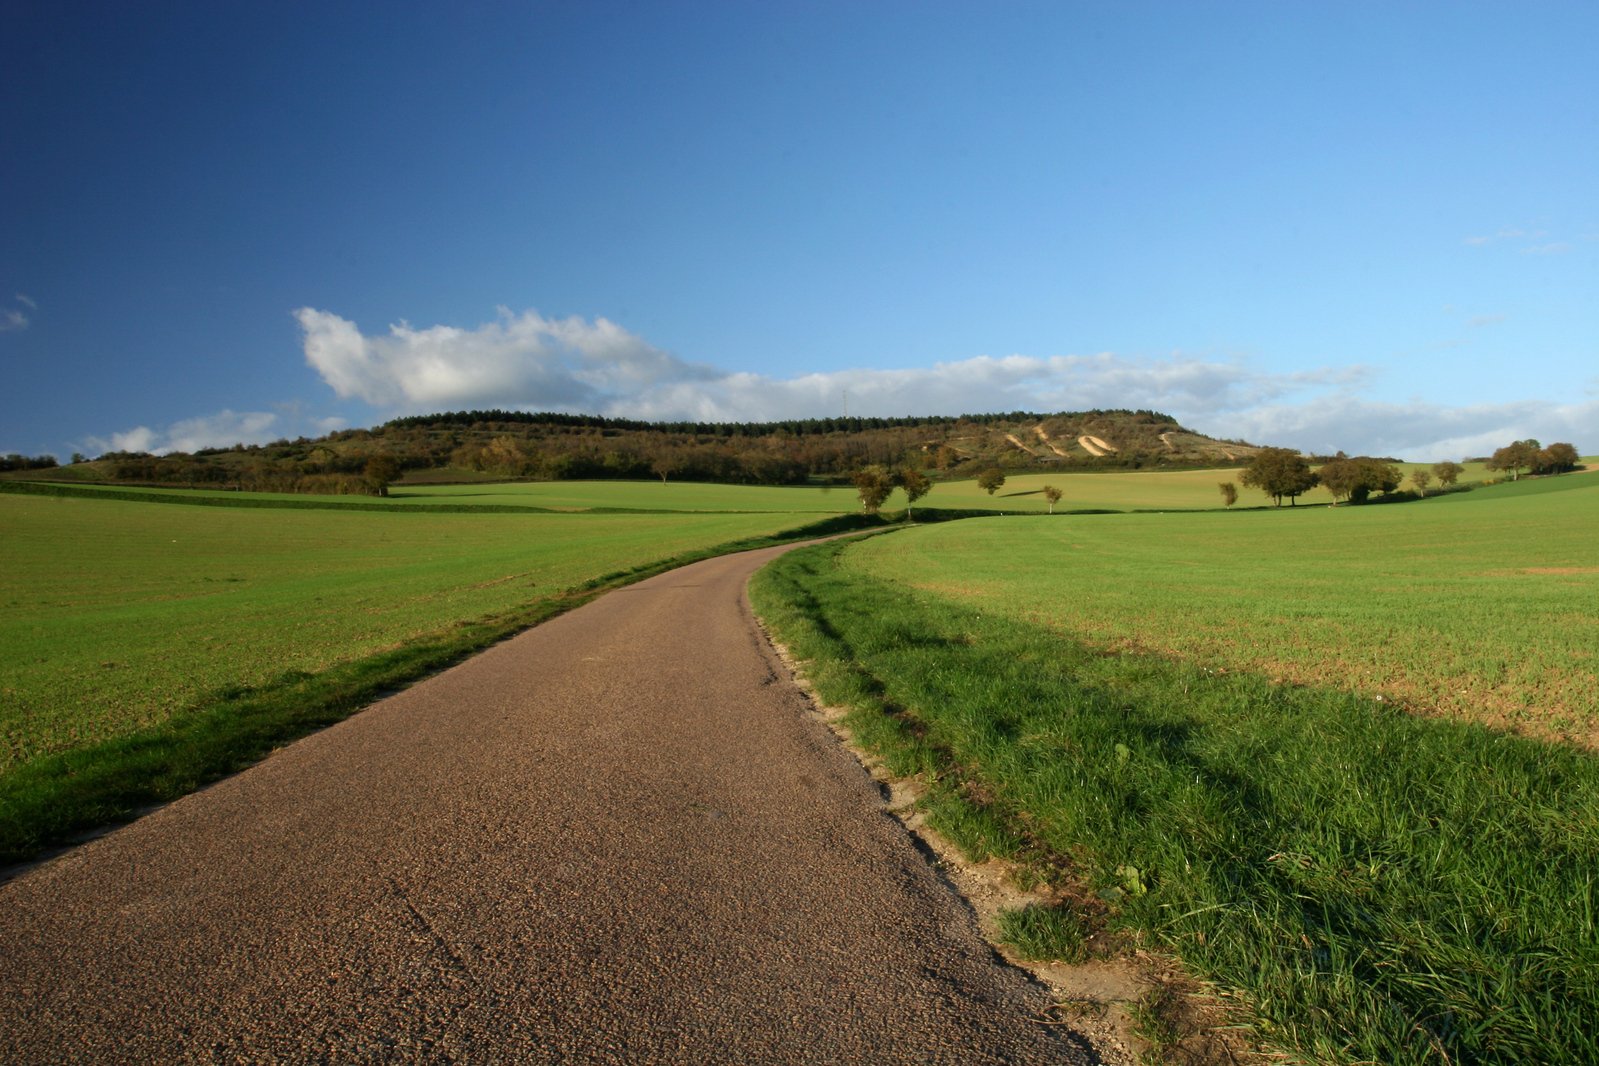 a road running through an open green countryside